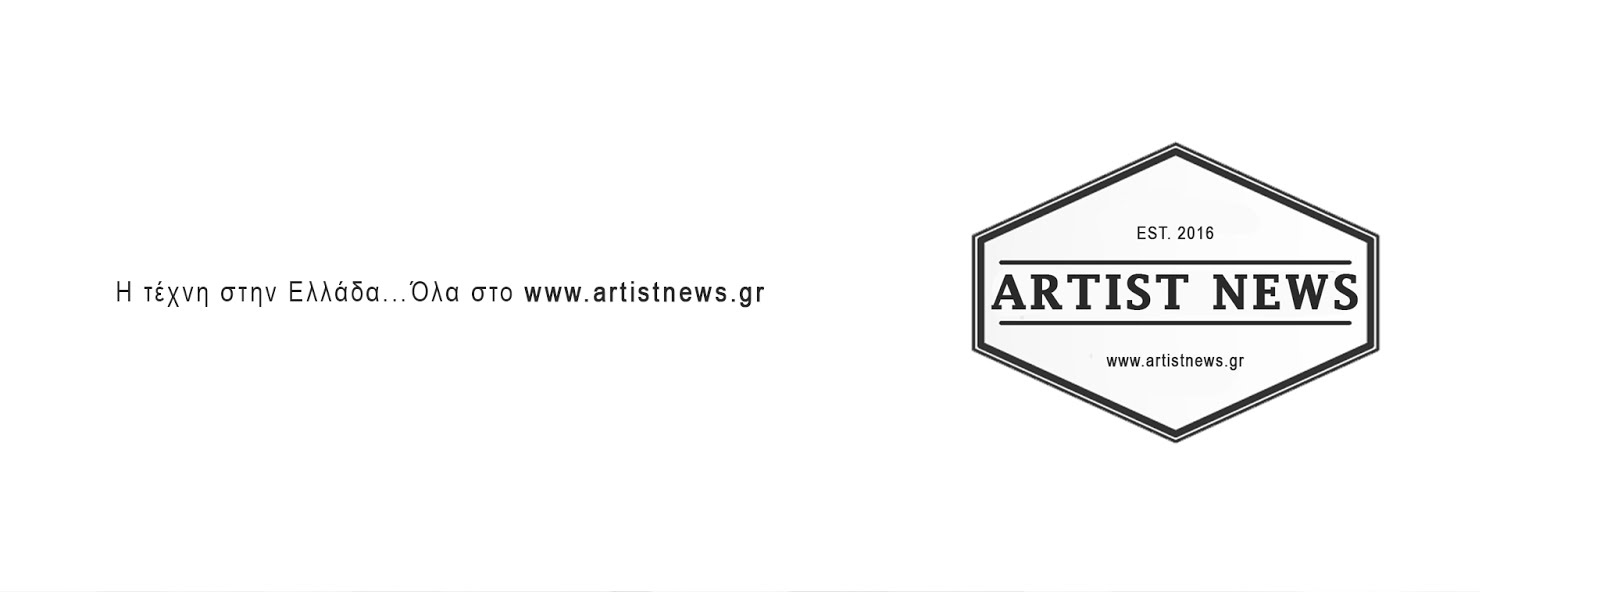 Artist News